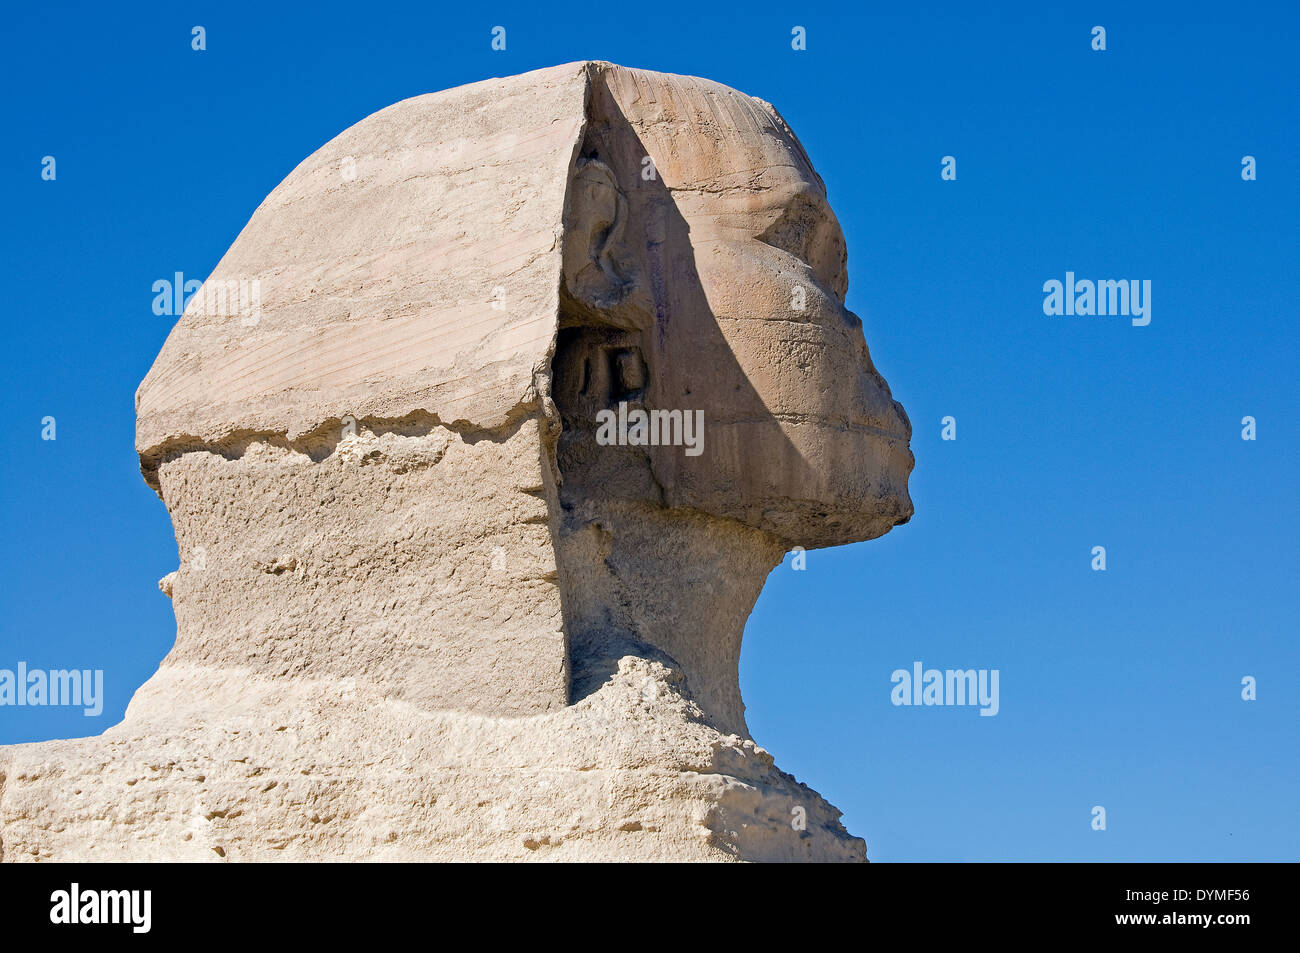 El perfil de la esfinge de Giza, en el altiplano, El Cairo. Foto de stock